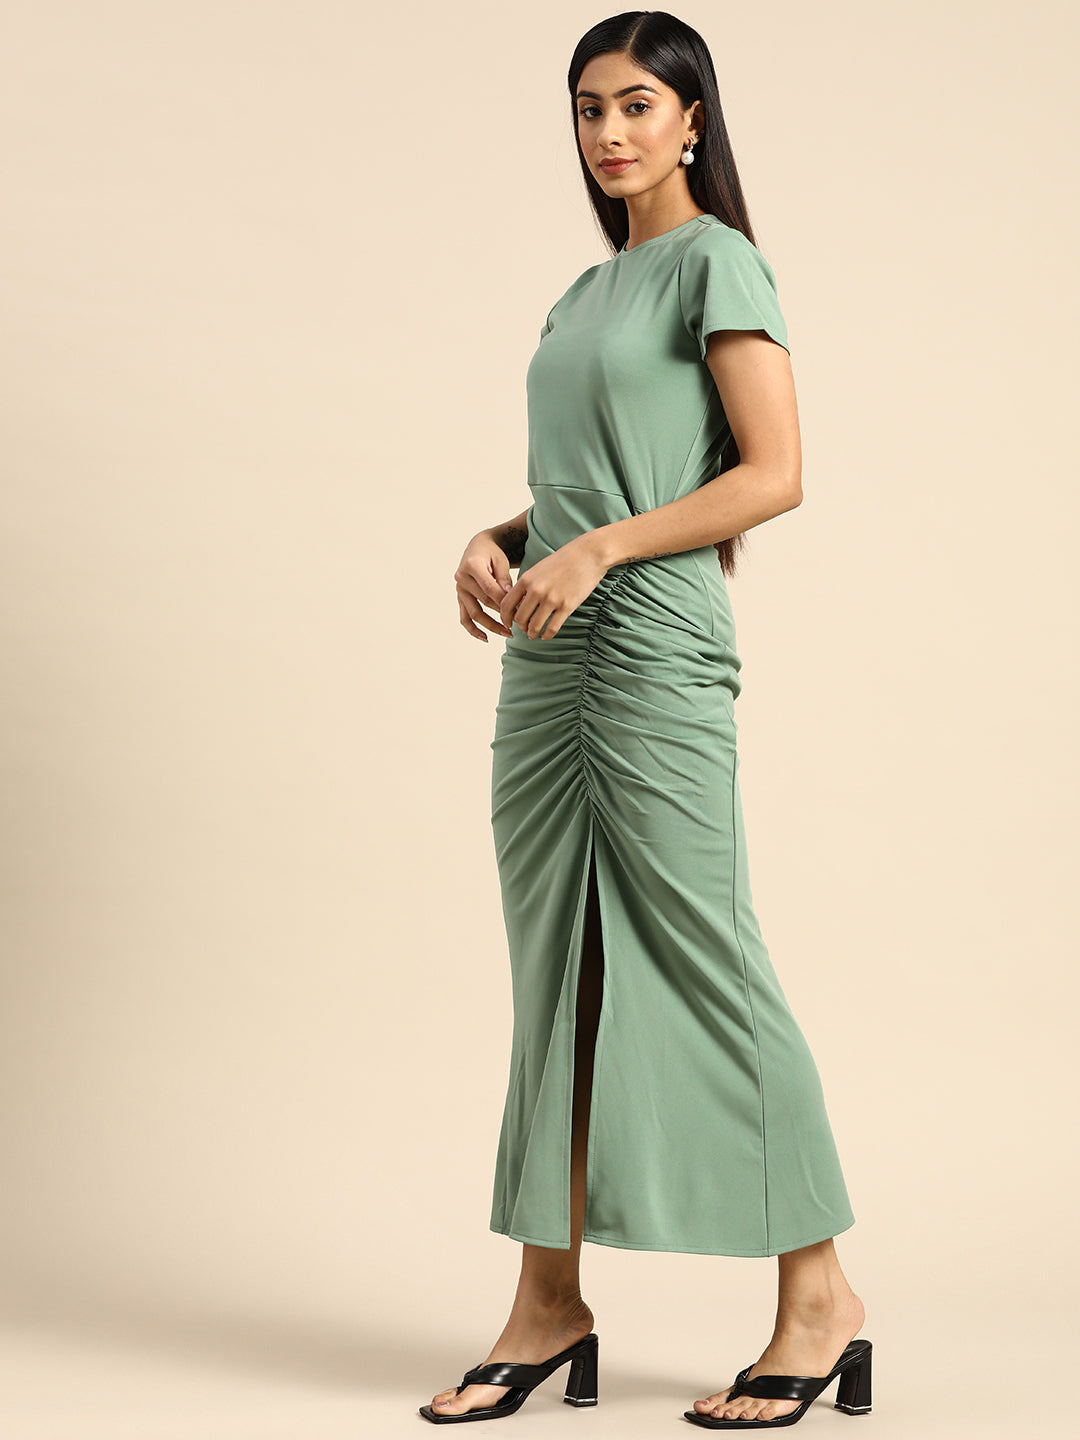 Athena Green Bodycon Ruched Midi Dress - Athena Lifestyle